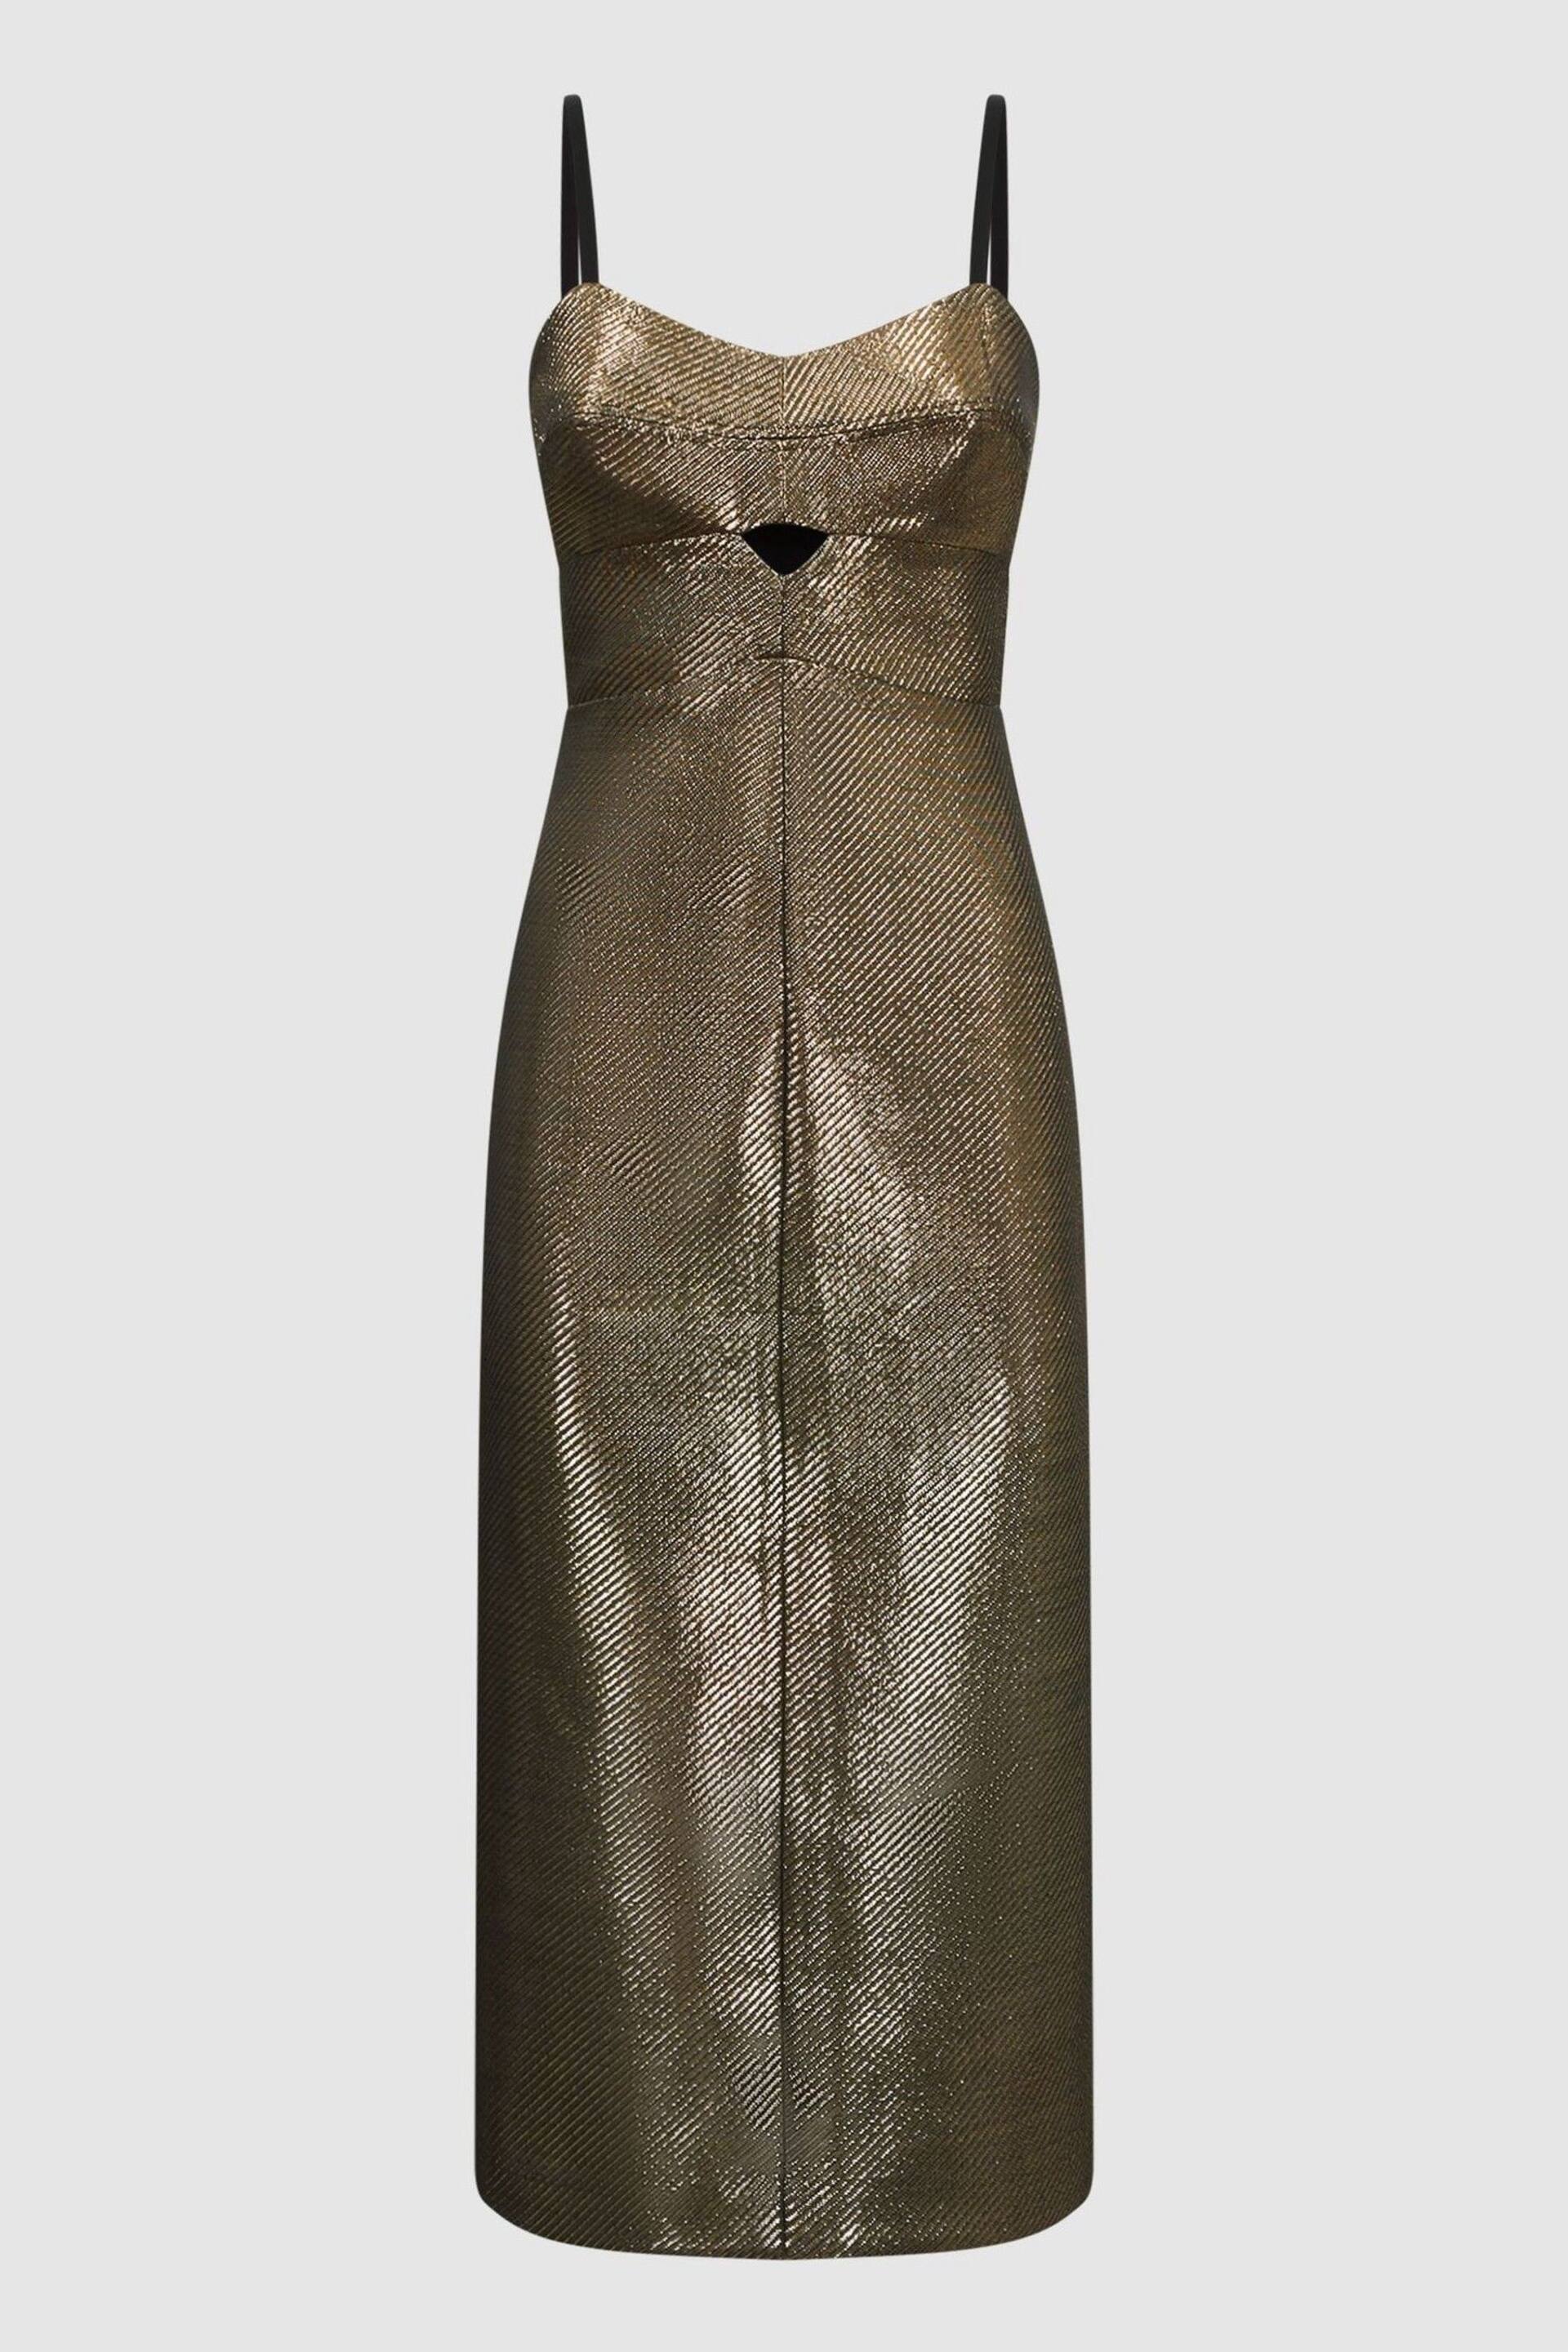 Reiss Gold Mina Metallic Bodycon Midi Dress - Image 2 of 4